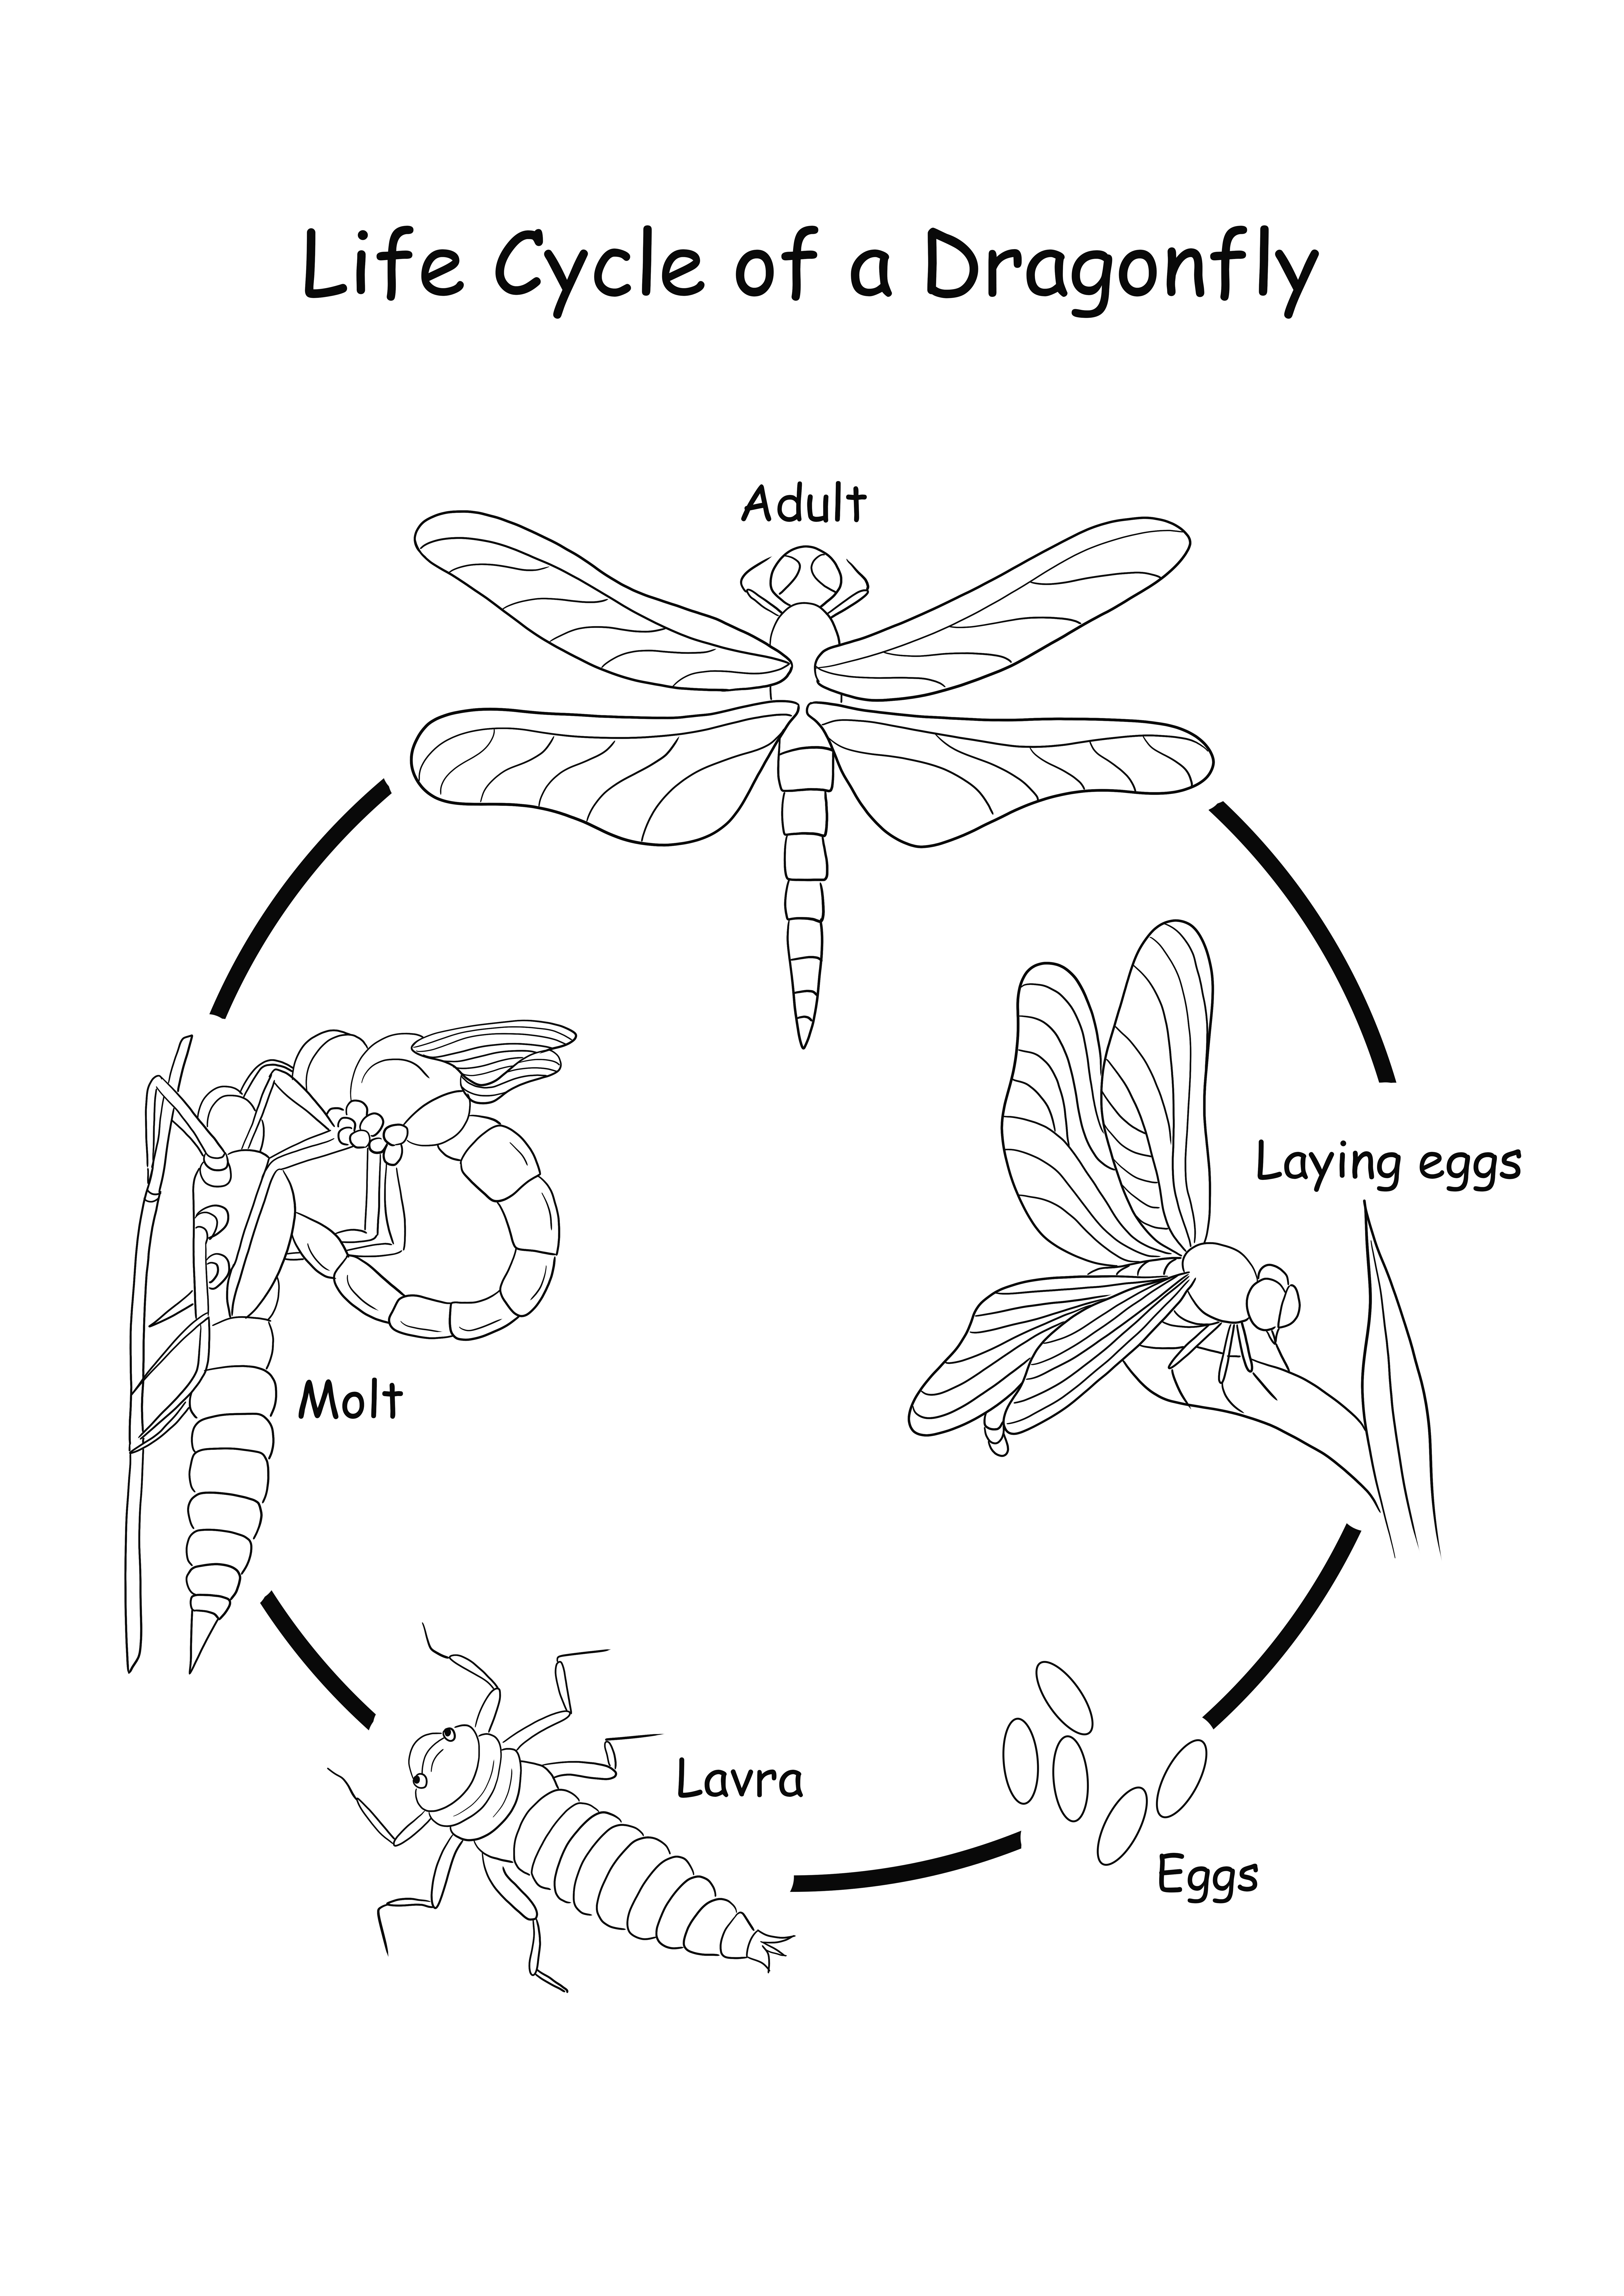 Life Cycle of a Dragonfly gratis printen of downloaden kleurplaat